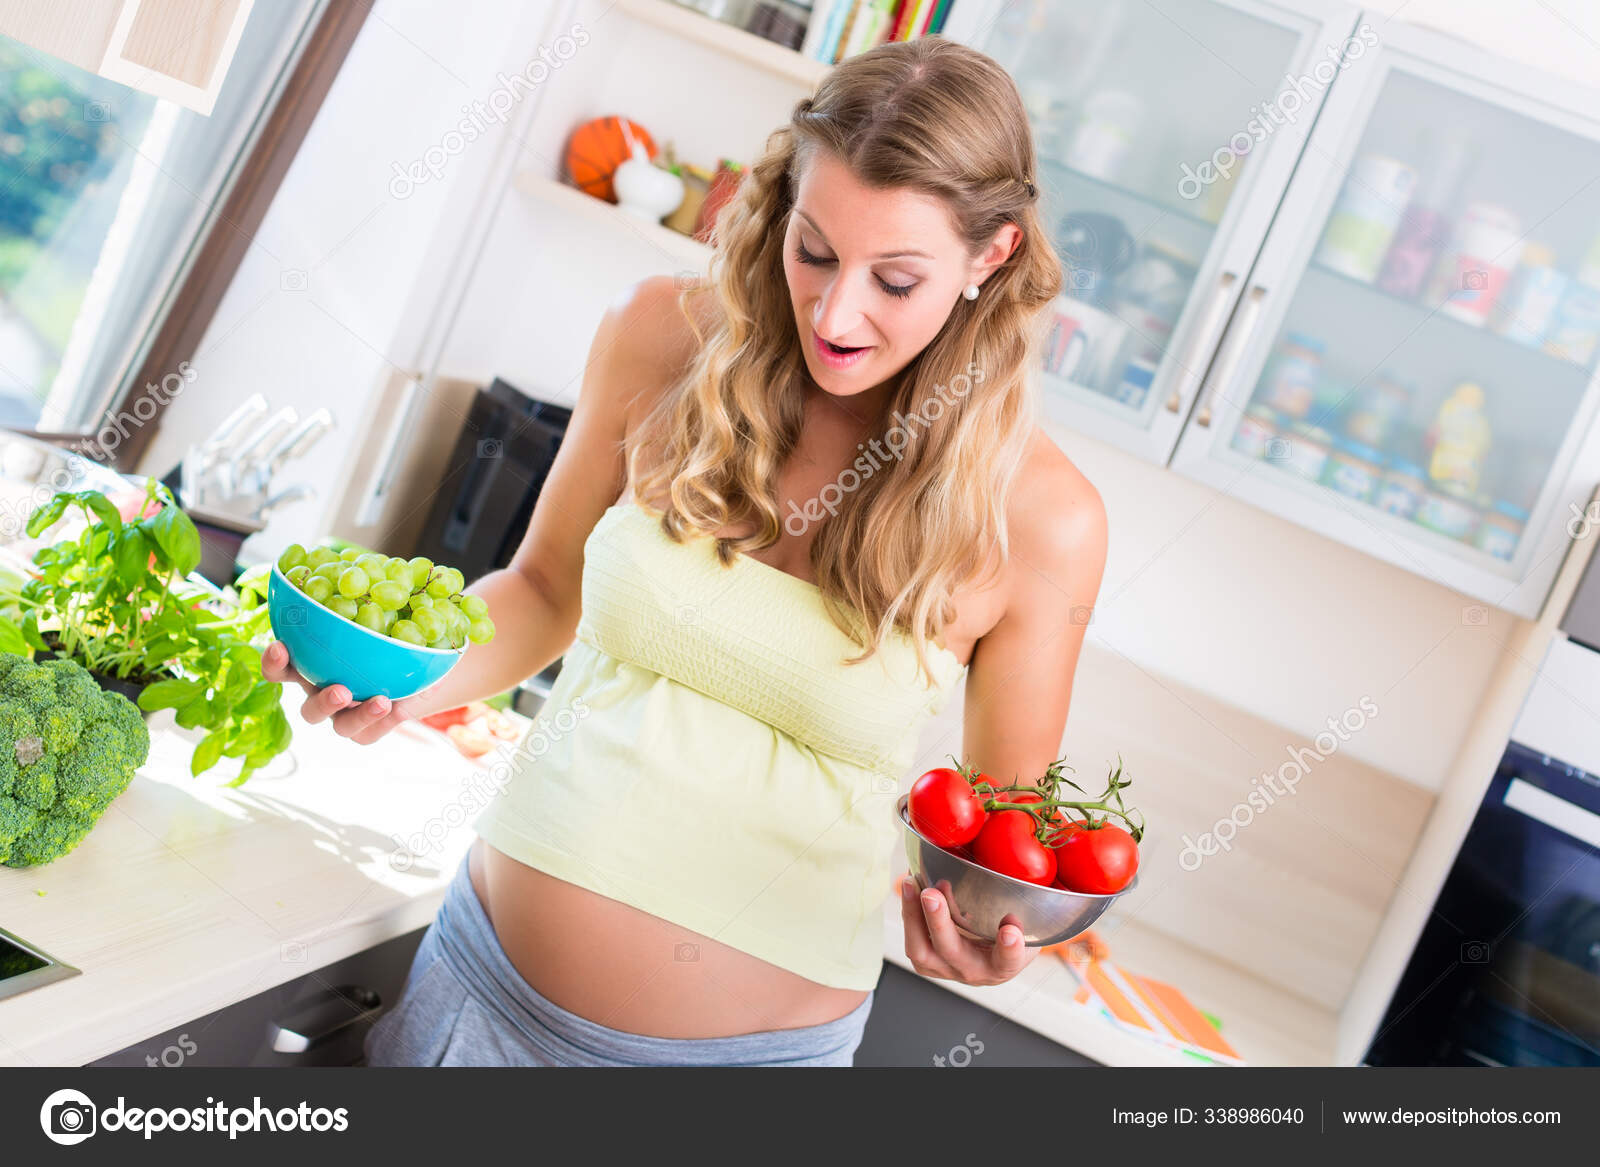 Schwangere Ernahrt Sich Gesund Mit Gemuse Und Obst Stockfoto C Panthermediaseller